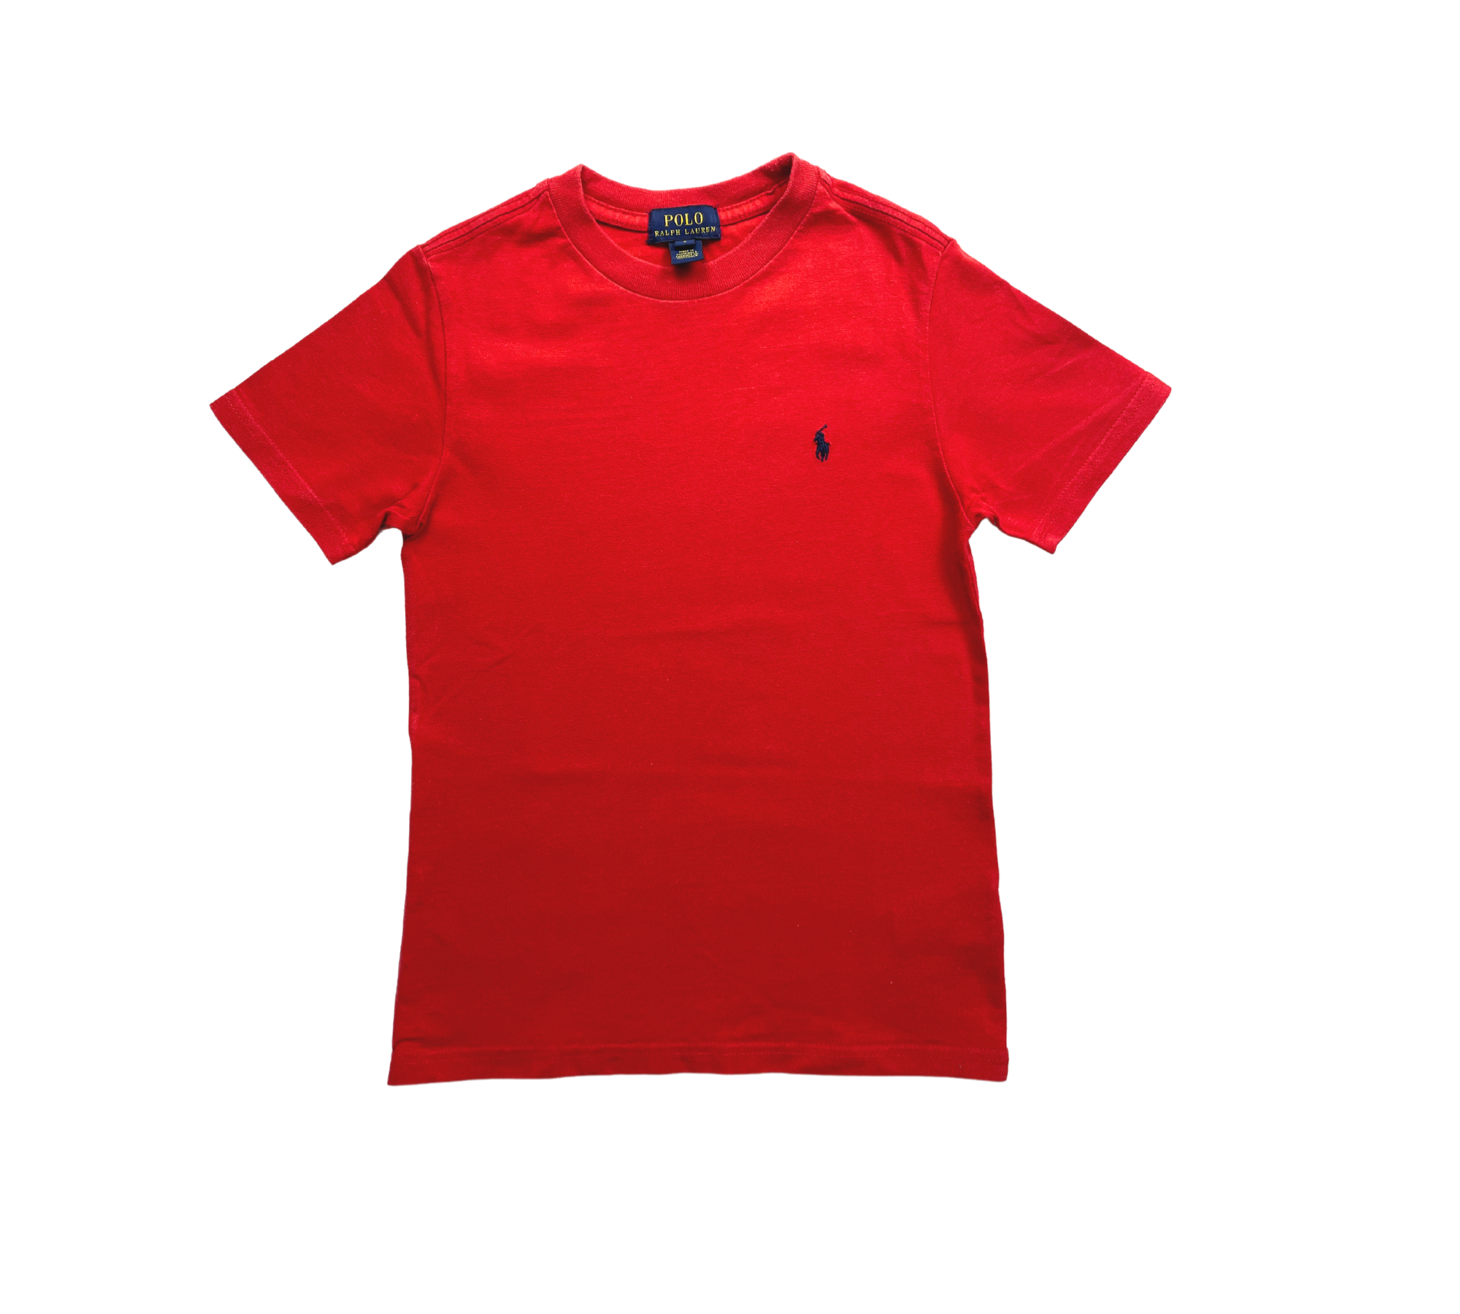 RALPH LAUREN - Tee shirt rouge - 7 ans